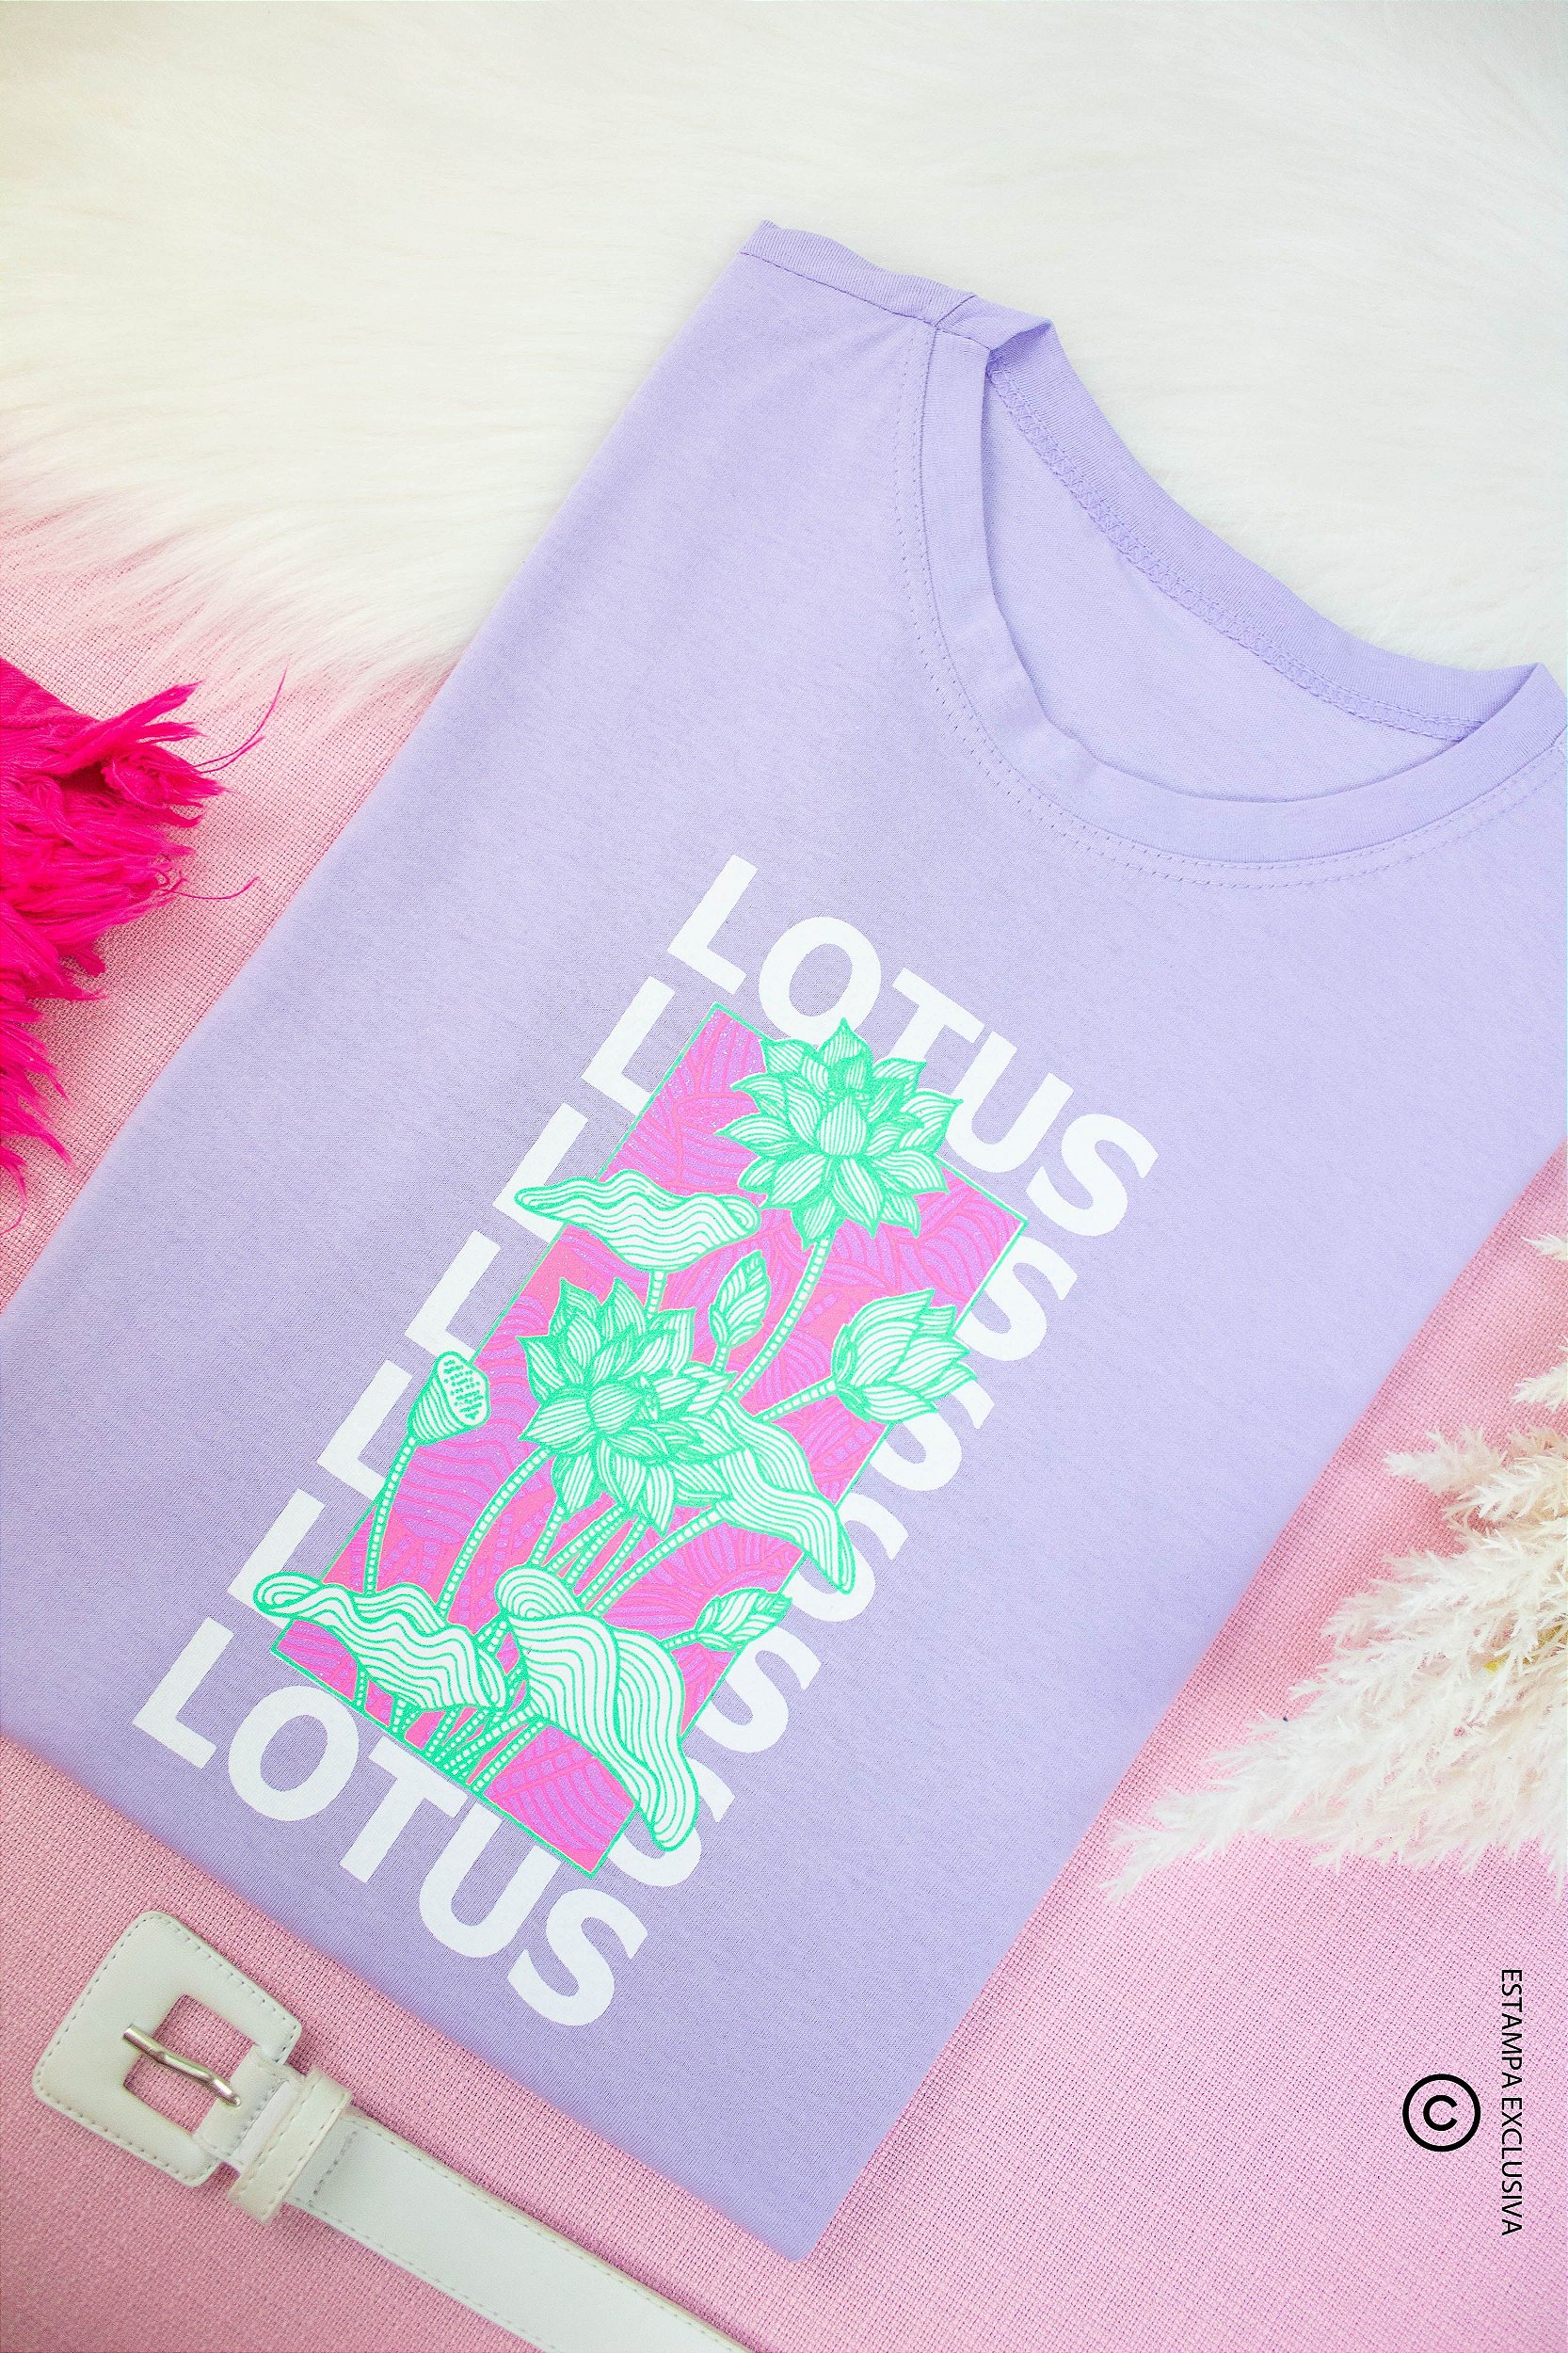 T'Shirts super estilosas - Flor de Lótus Moda Feminina